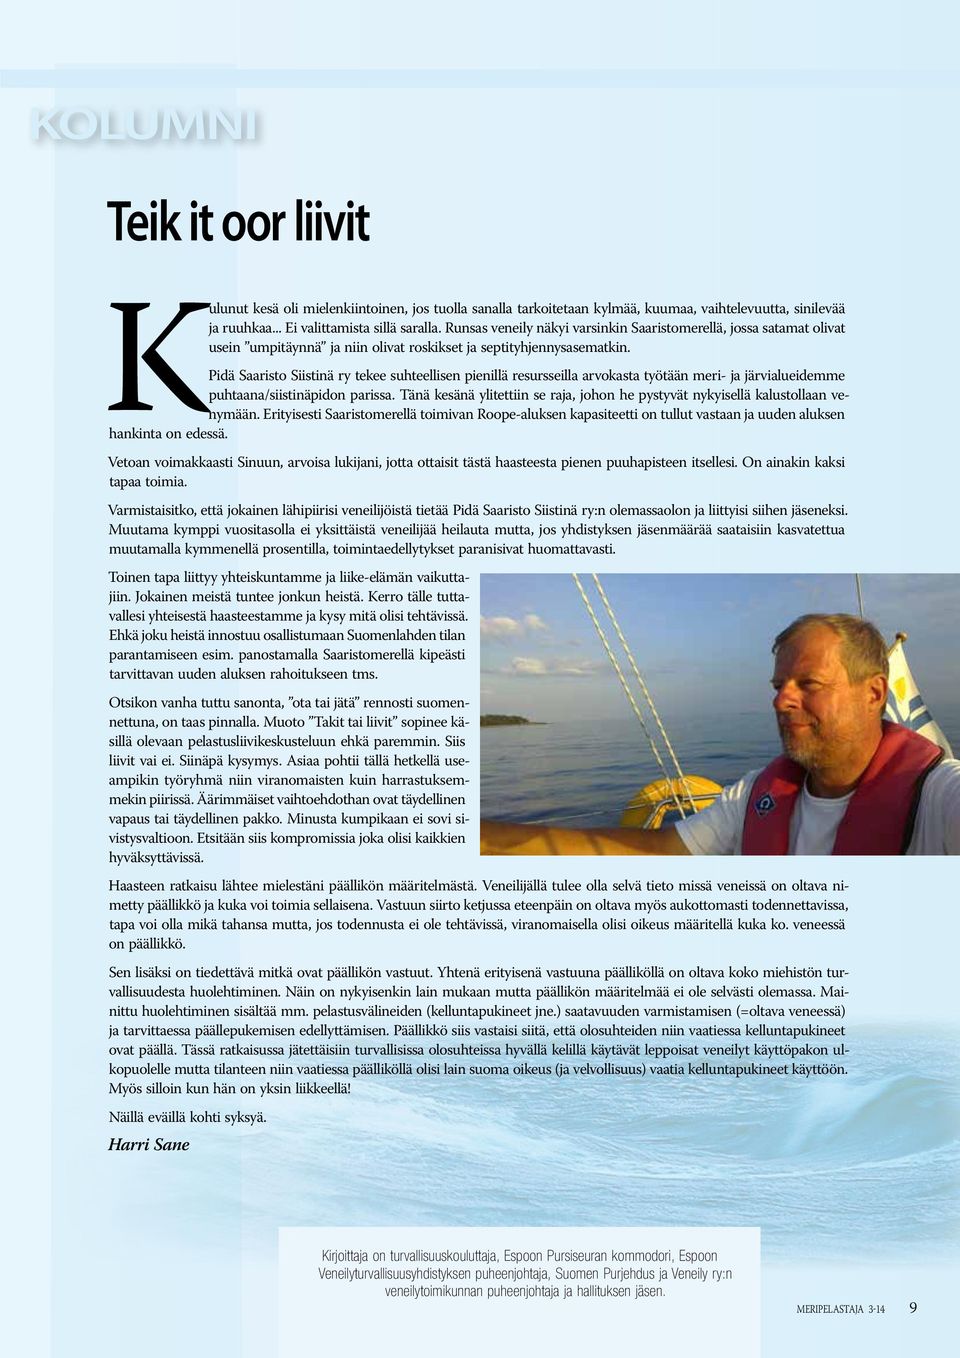 Pidä Saaristo Siistinä ry tekee suhteellisen pienillä resursseilla arvokasta työtään meri- ja järvialueidemme puhtaana/siistinäpidon parissa.